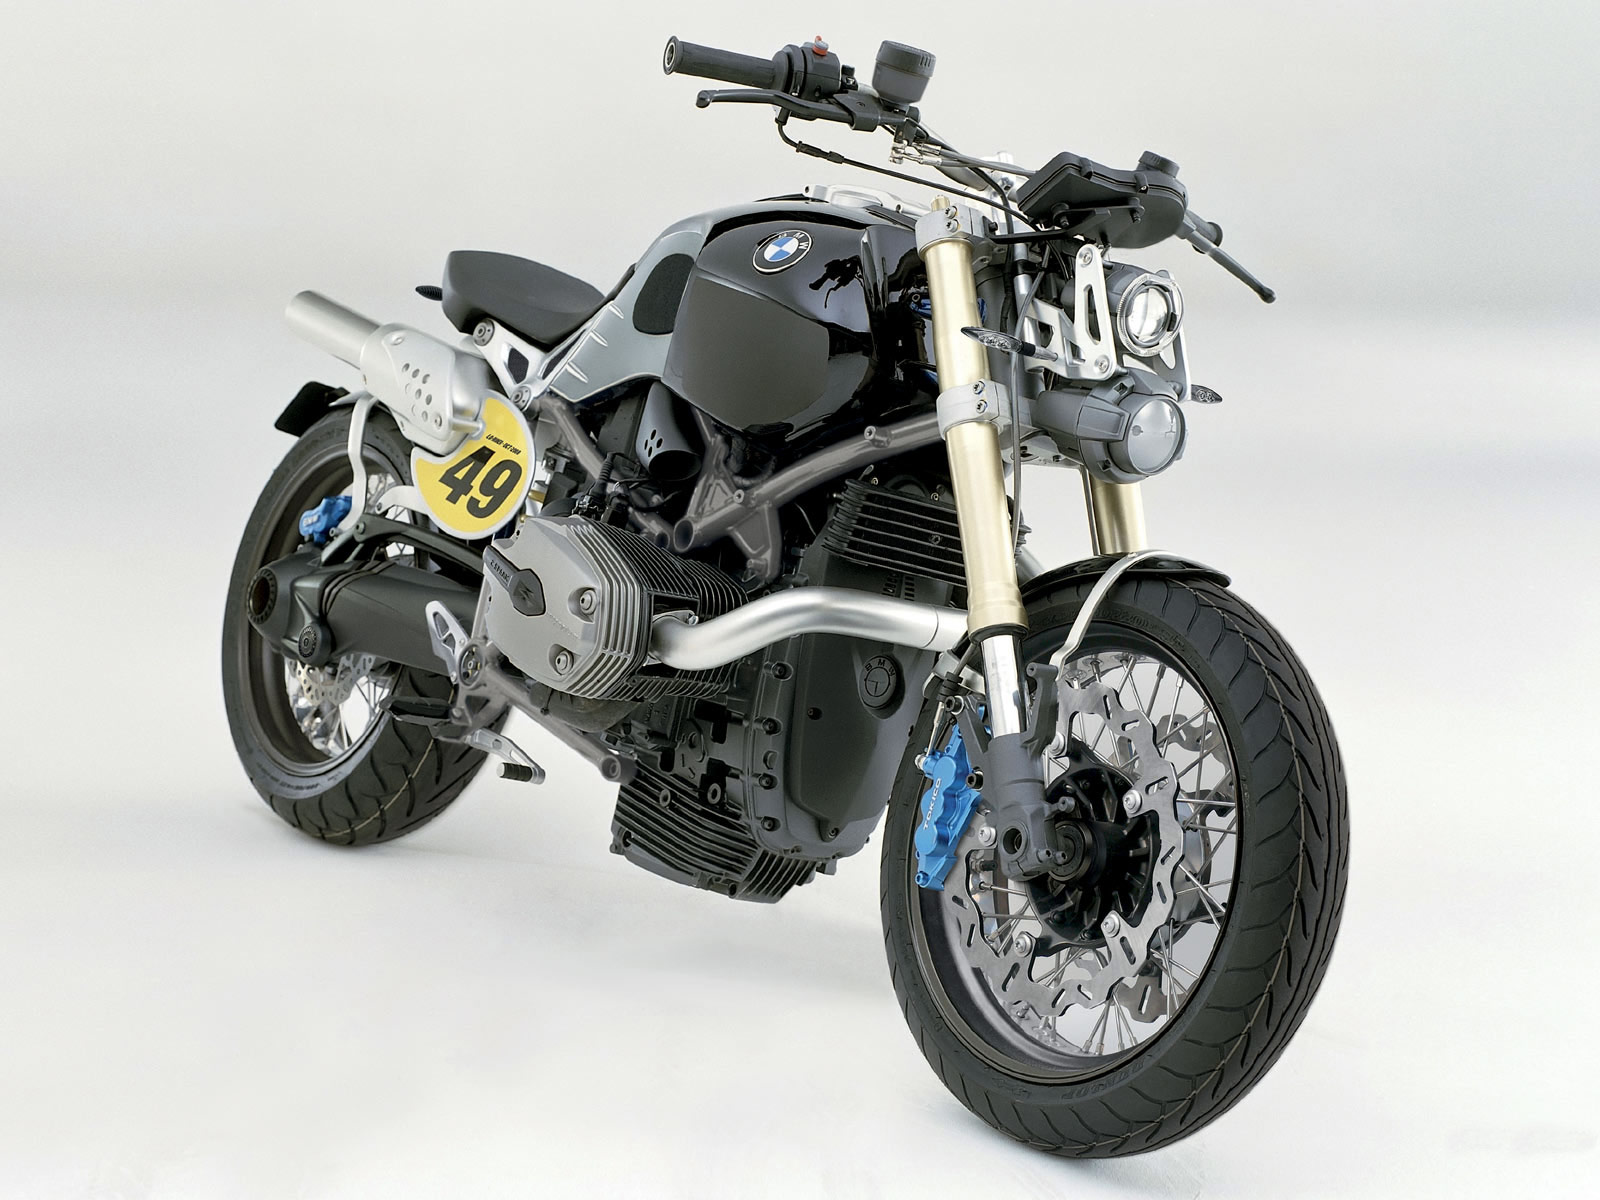 2009 BMW Lo Rider Concept motorcycle wallpaper